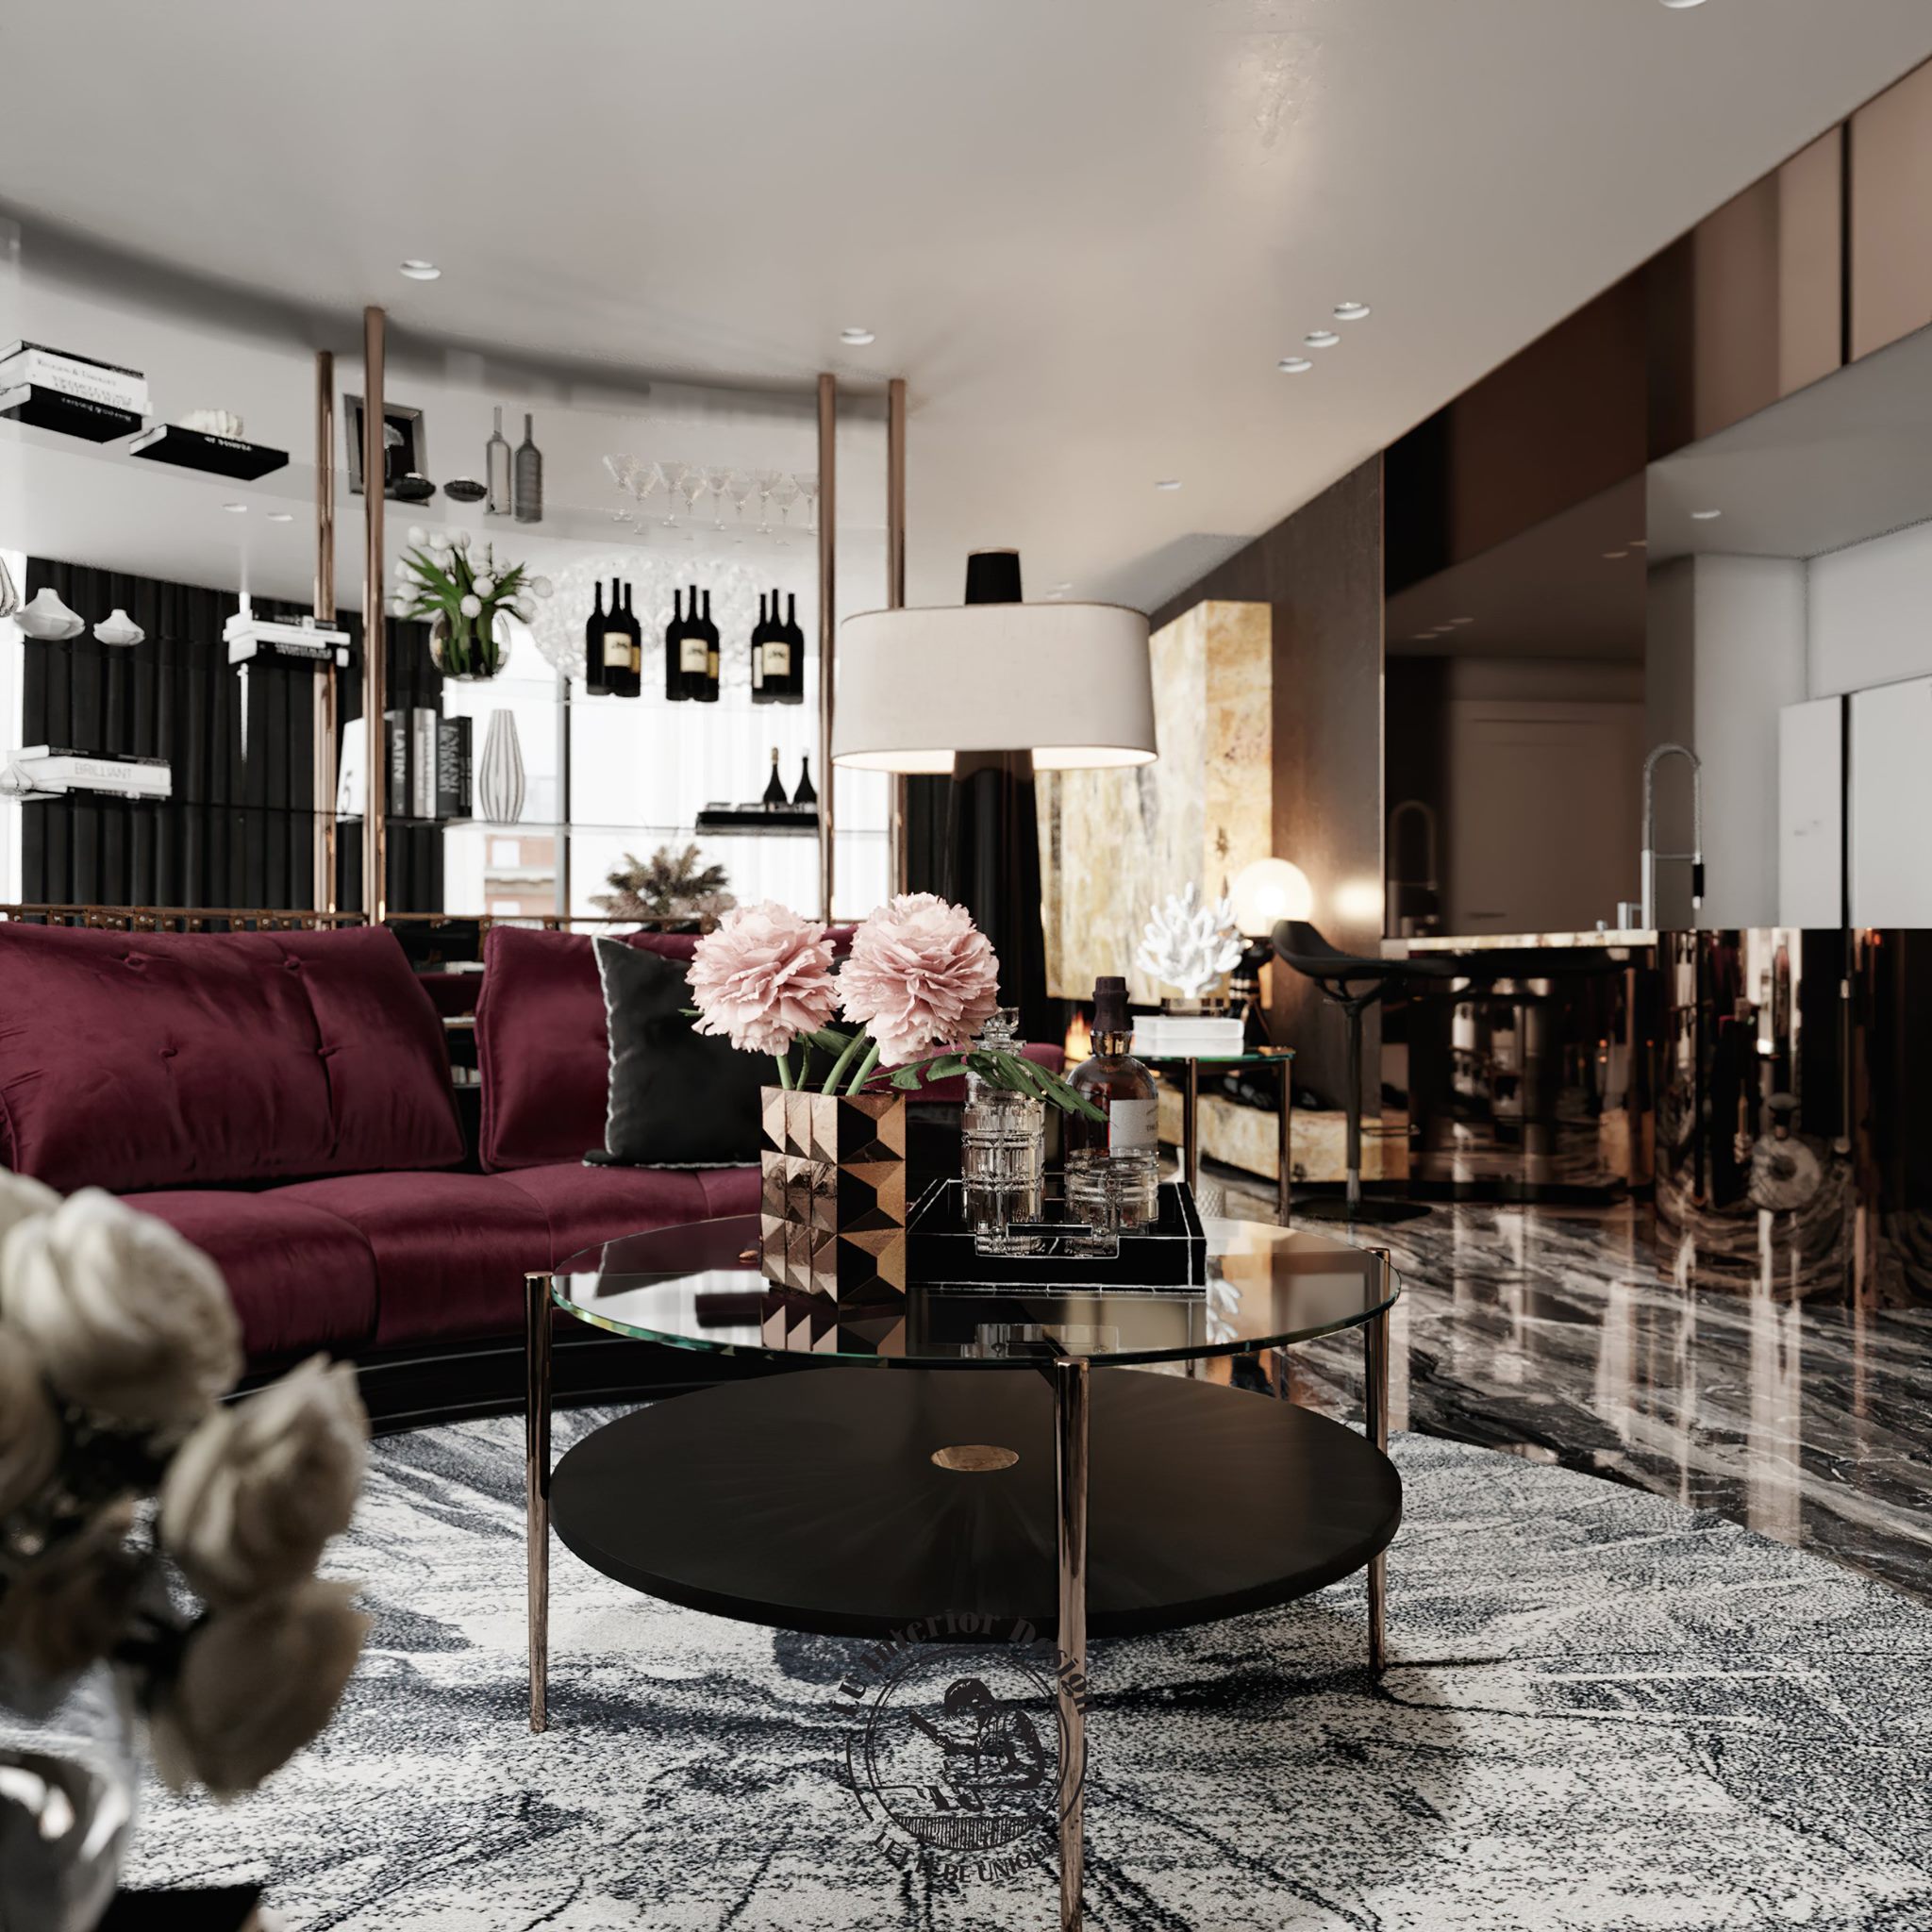 Sử dụng đồ nội thất cao cấp trong trang trí nội thất phòng khách | Dự án Penthouse Vũng Tàu - LU Design thực hiện.